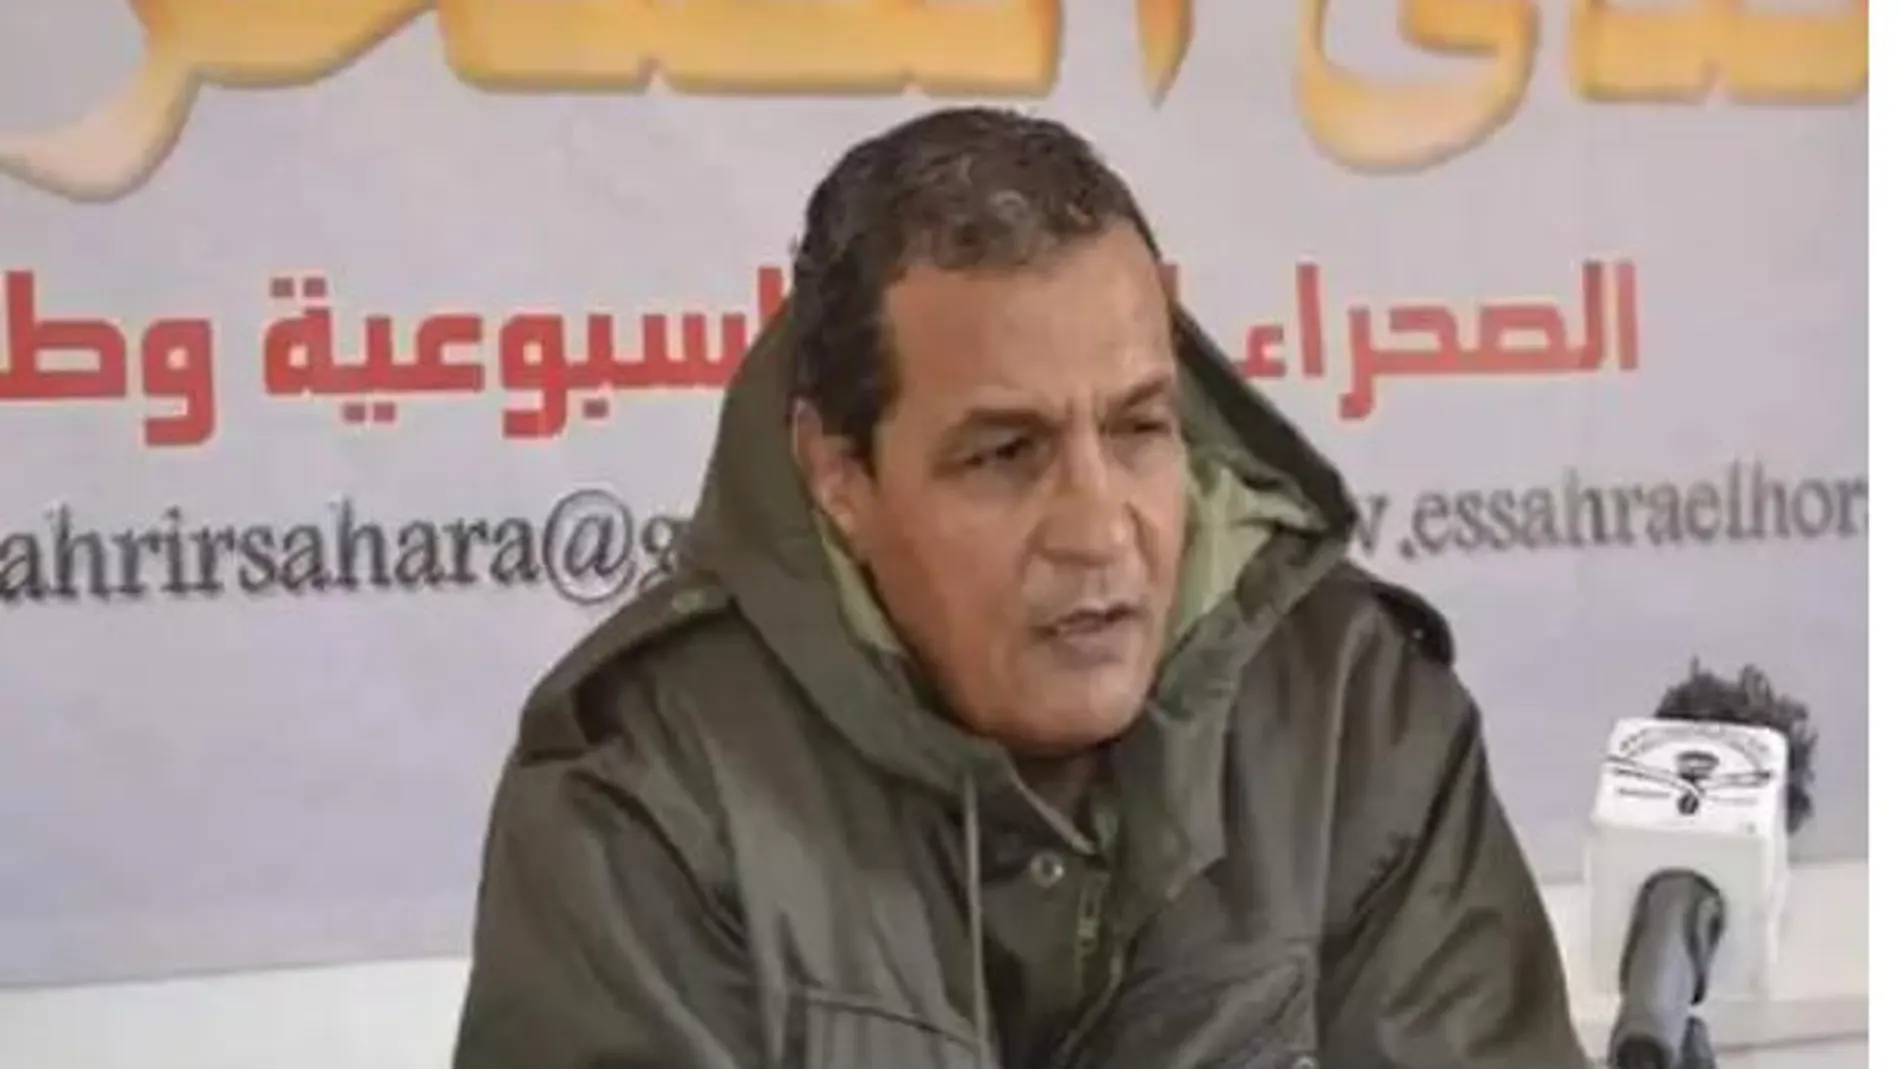 El "jefe militar" Taleb Ammi Deh, que lanzó la amenaza contra las empresas extranjeras que trabajen en el Sáhara Occidental